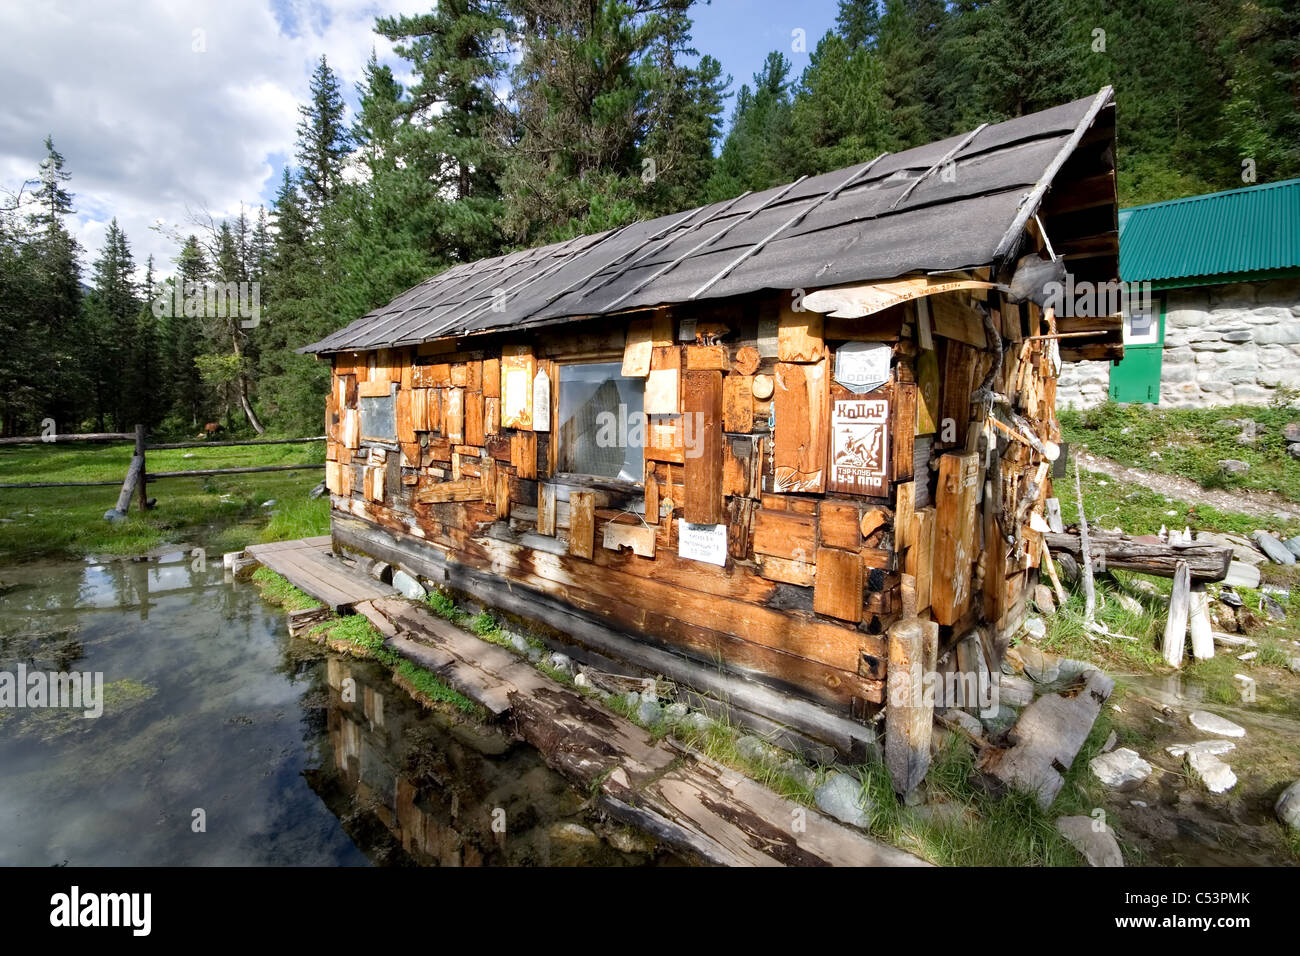 Hütte in der Taiga mit nationalen Symbolen, Bildern und Mineralbad in Holz. Mineralquellen Sajan-Gebirge. Sibirien. Russland. Stockfoto